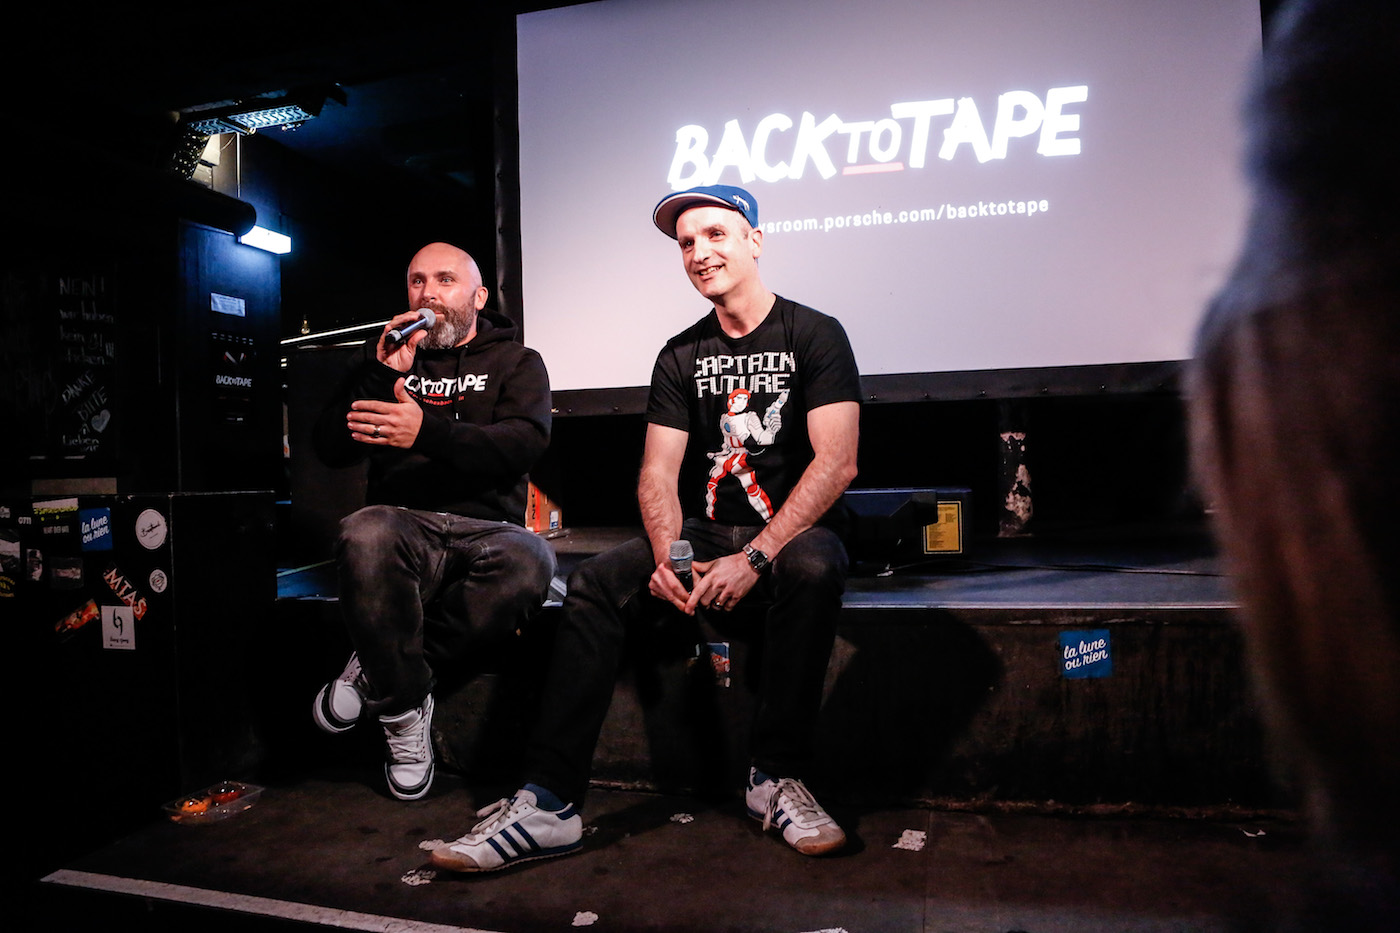 Back to Tape: Ein Roadtrip zu den Wurzeln des Hip-Hop 4